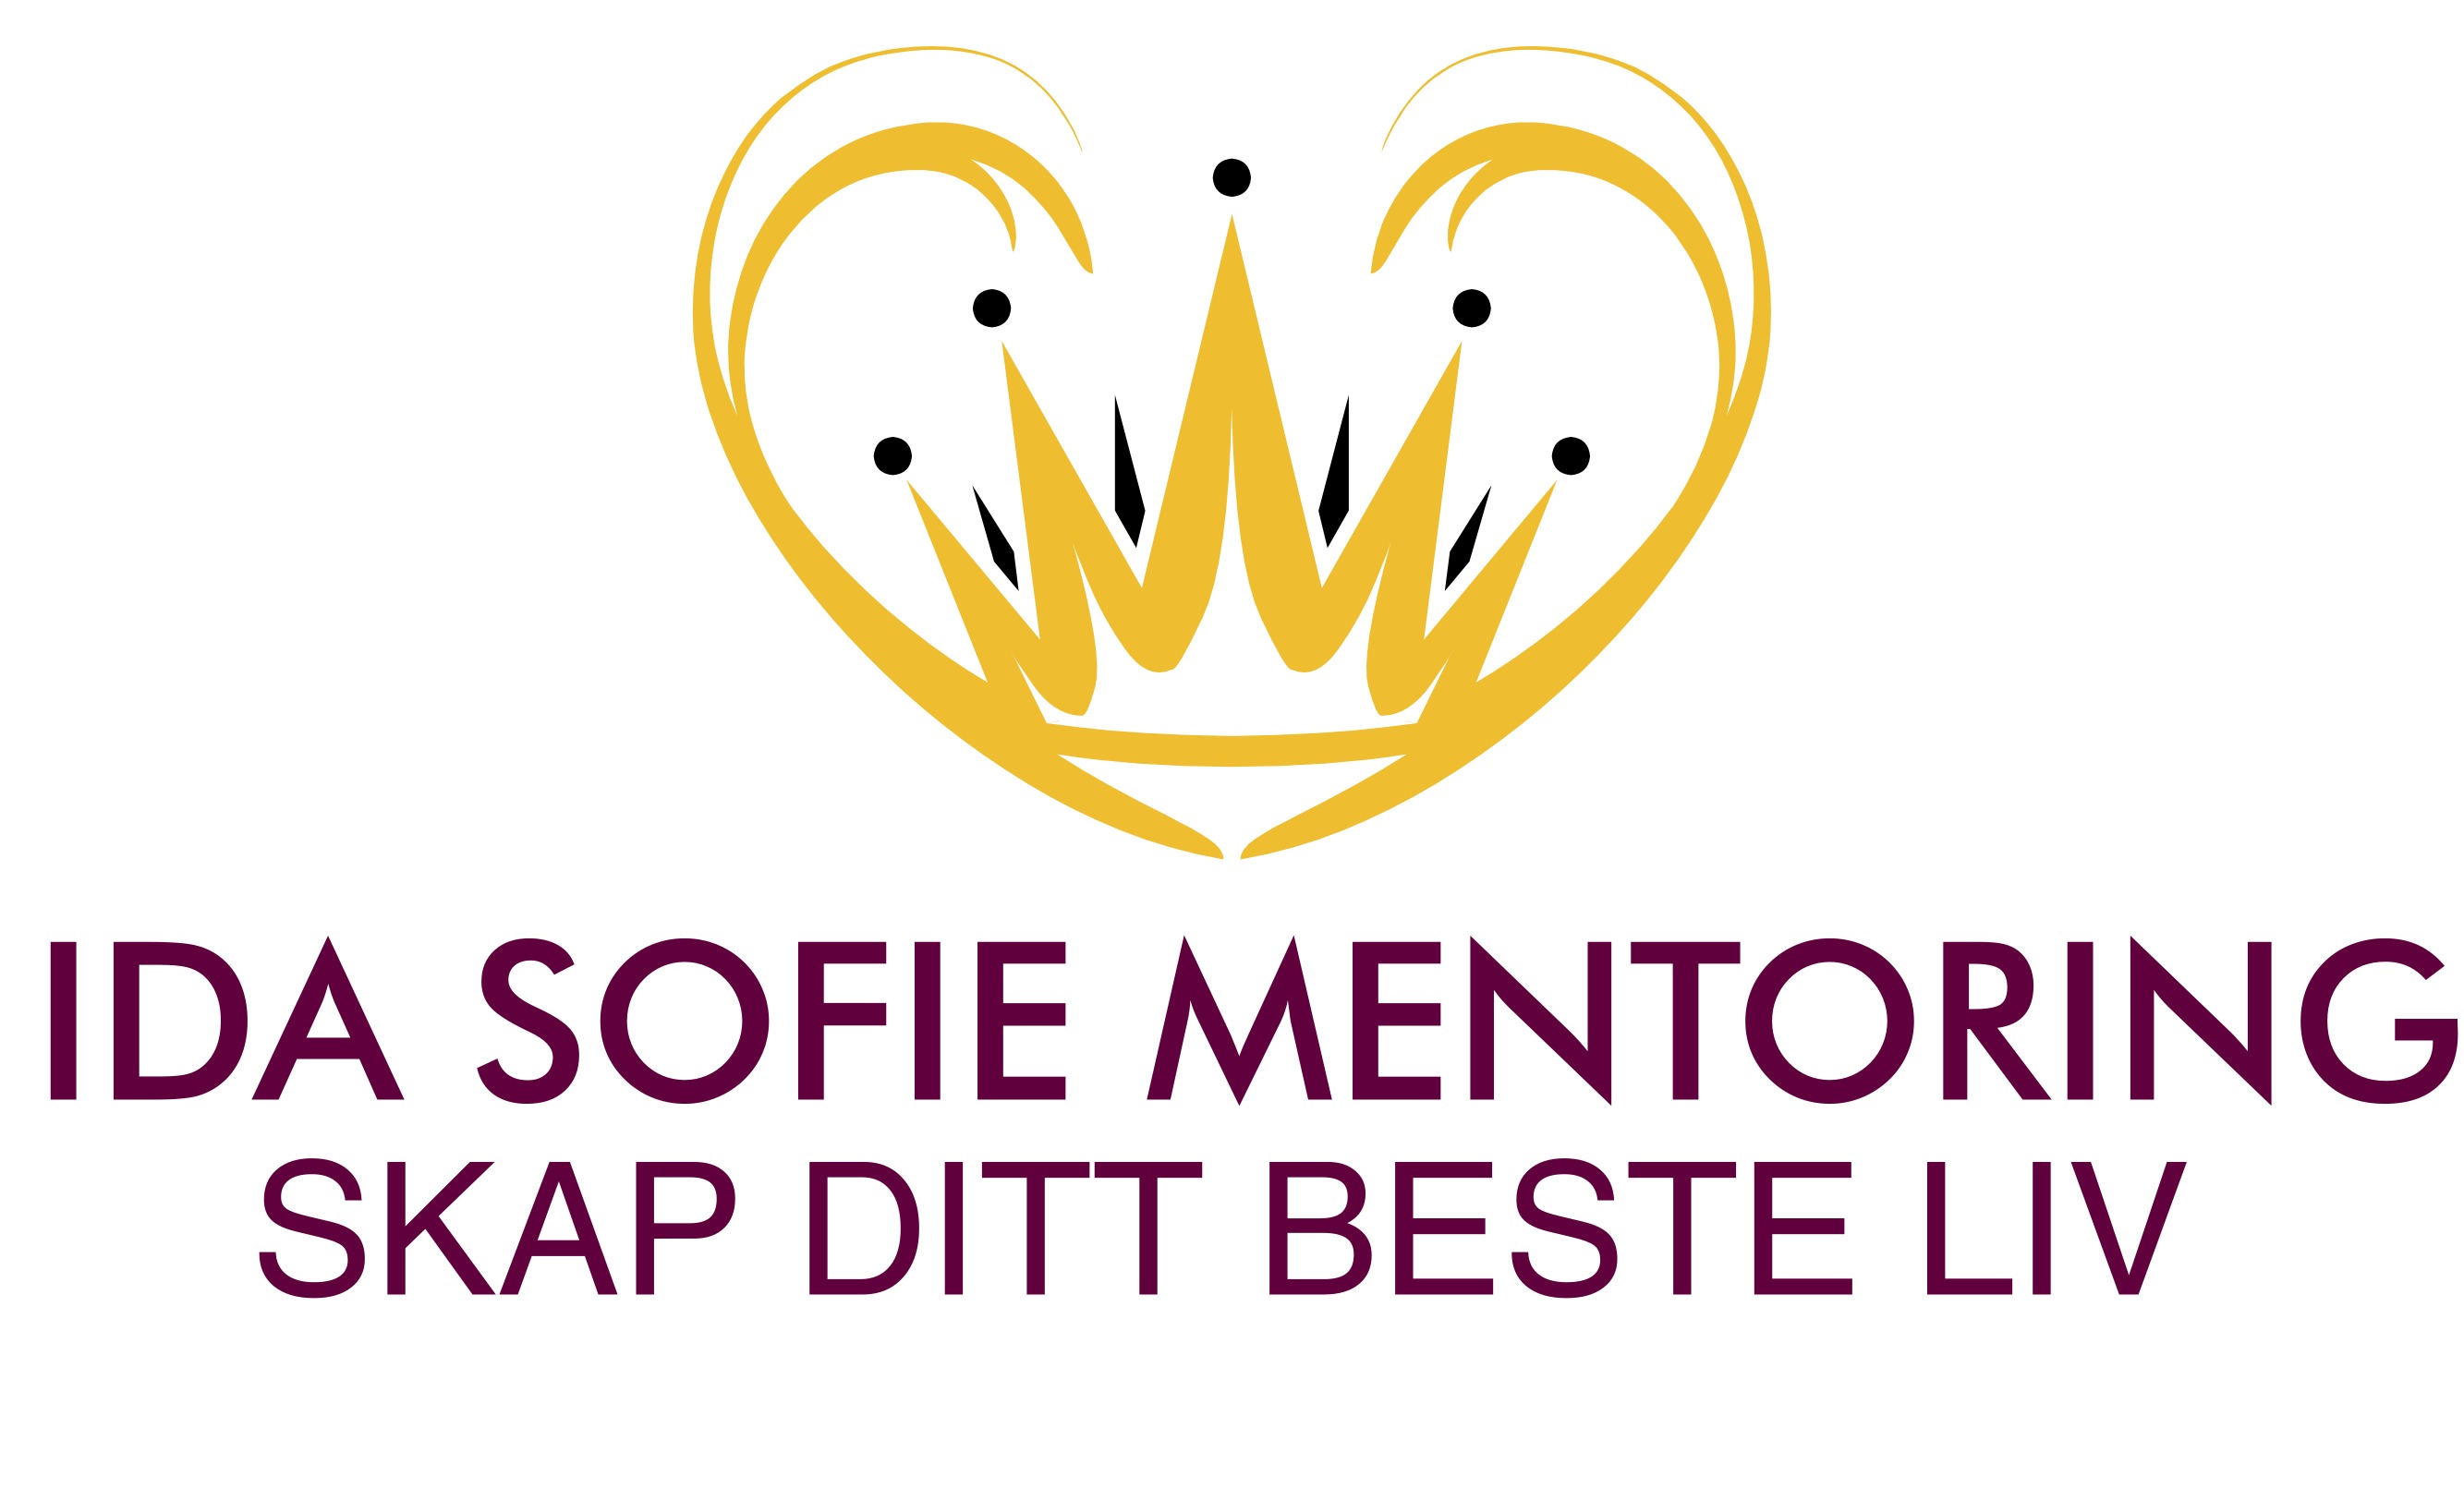 IDA SOFIE mentoring